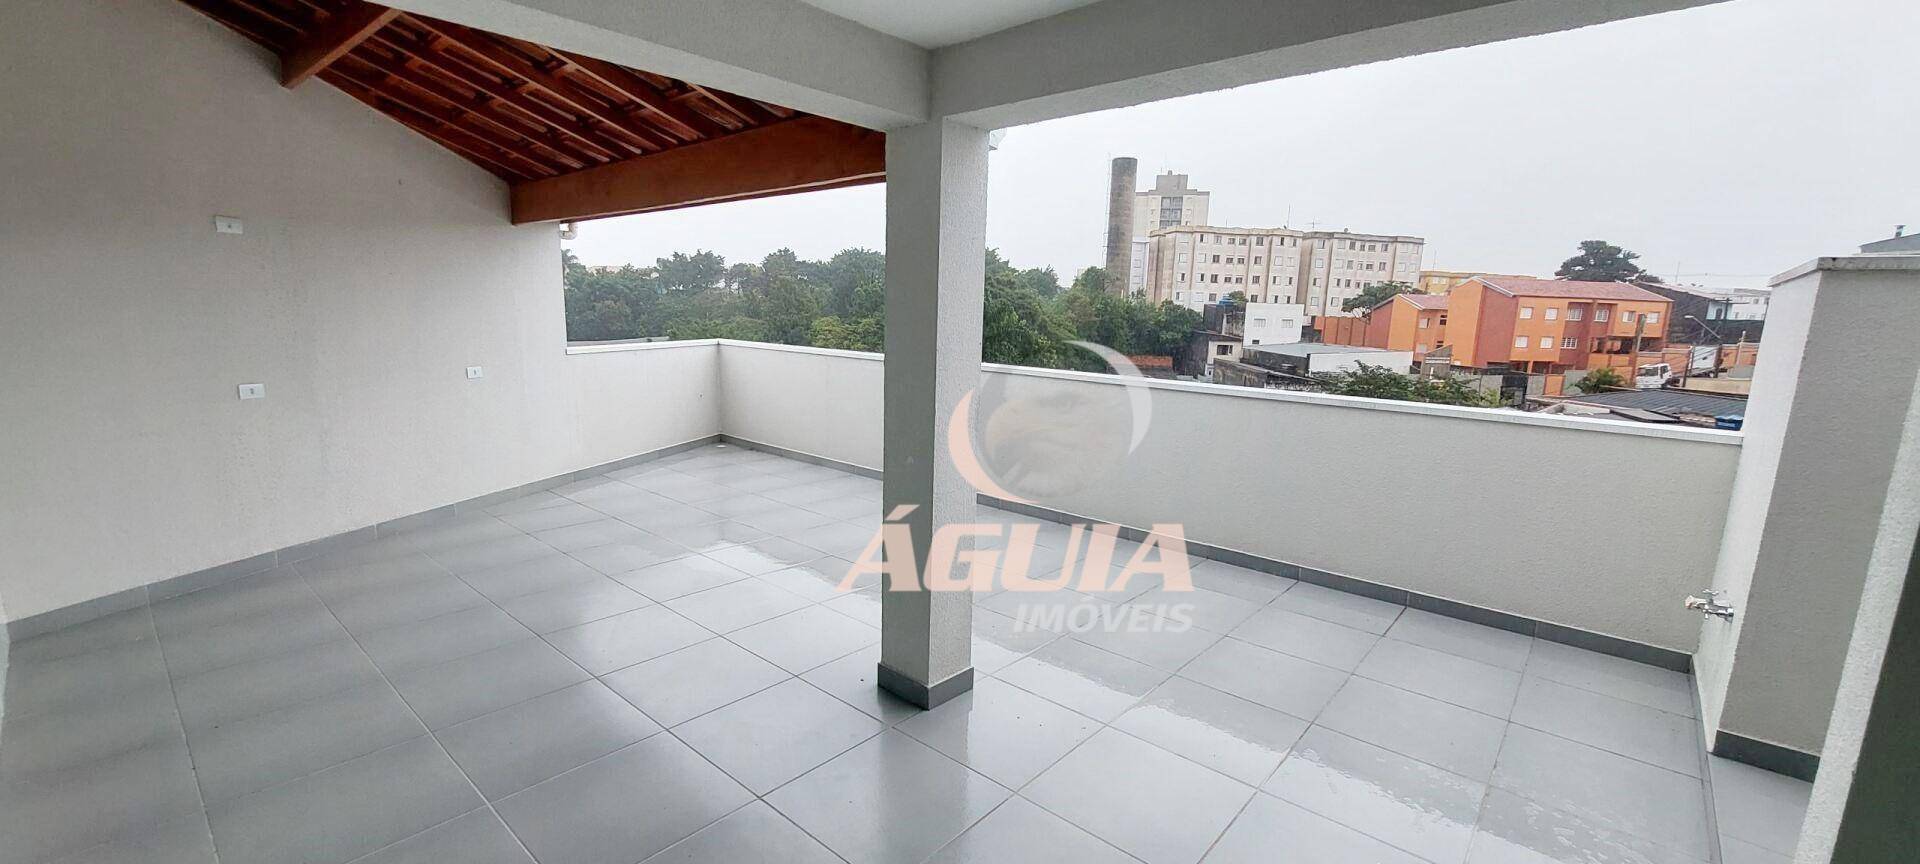 Cobertura com 2 dormitórios à venda, 51 m² por R$ 480.000,00 - Jardim Progresso - Santo André/SP